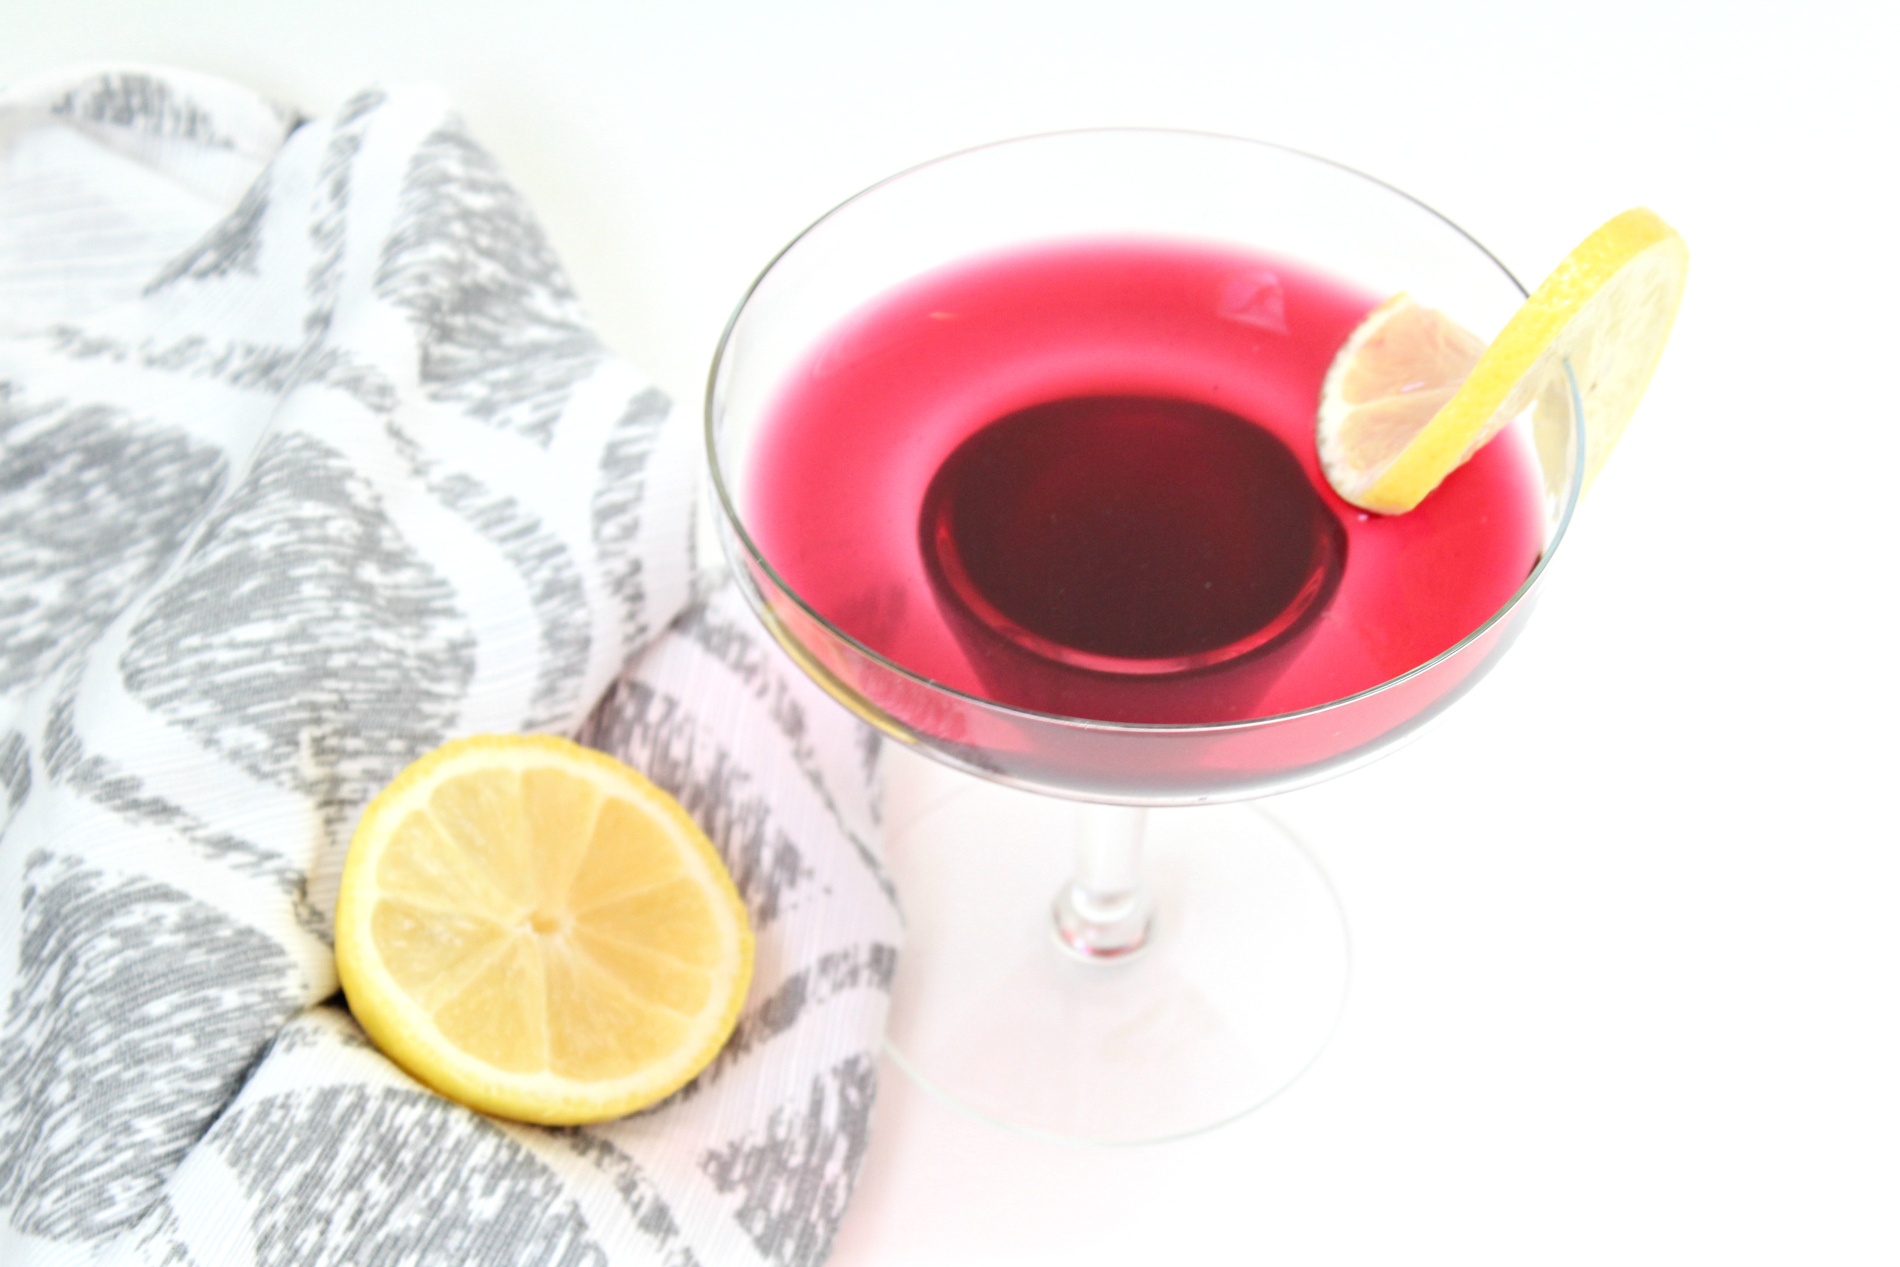 Best Blueberry Lemon Martini